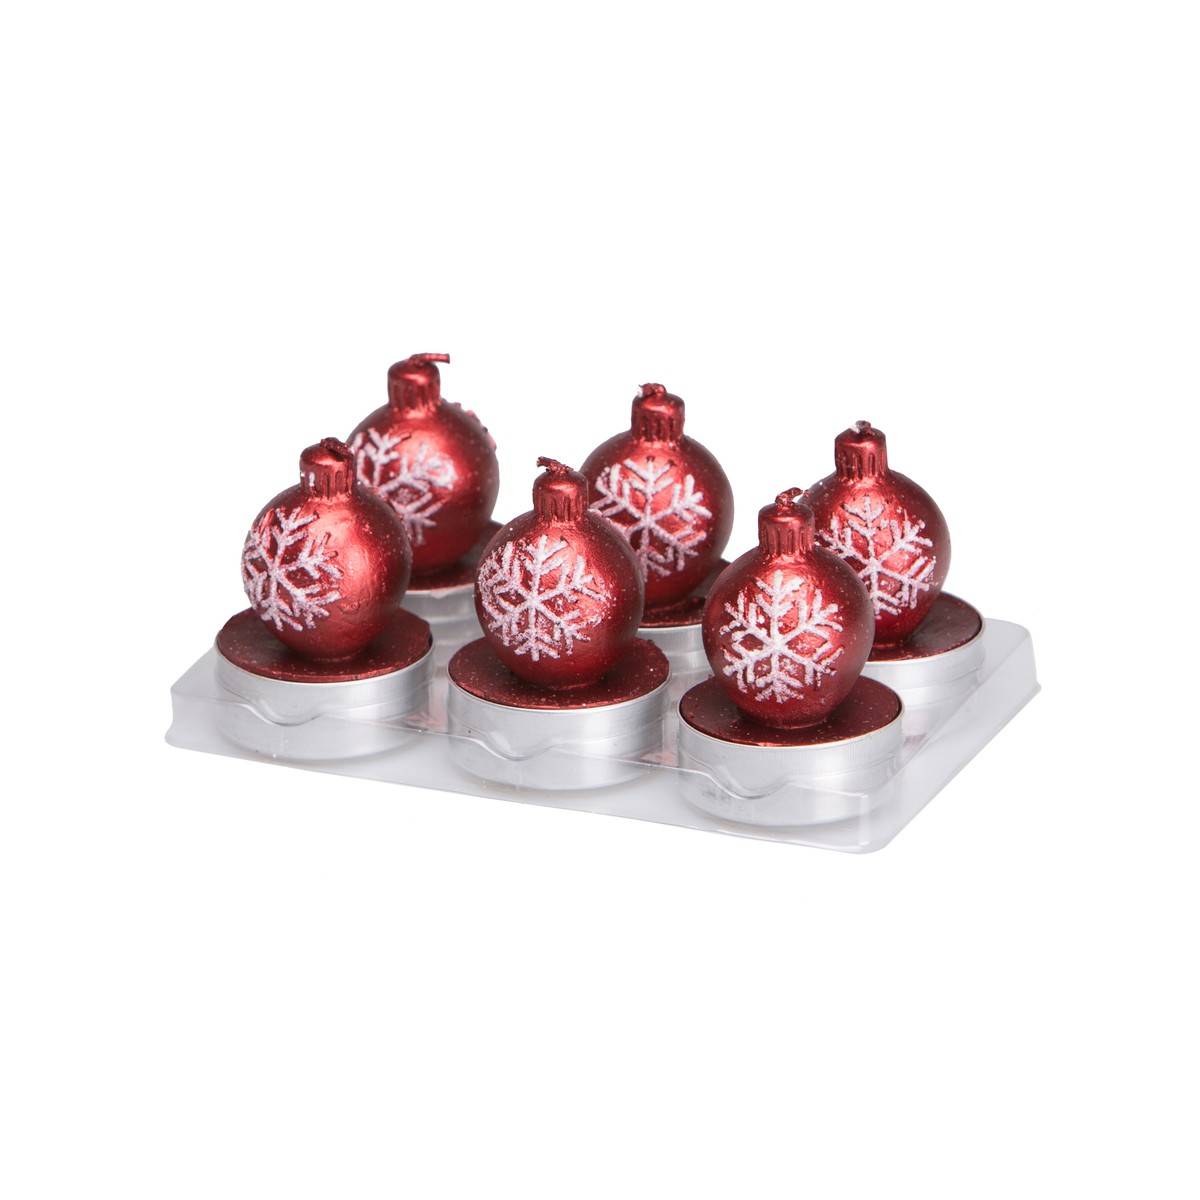   Bougies Boule de Noël Flocon en boite 6pcs Rouge cerise 14.1x9.3x5.8cm